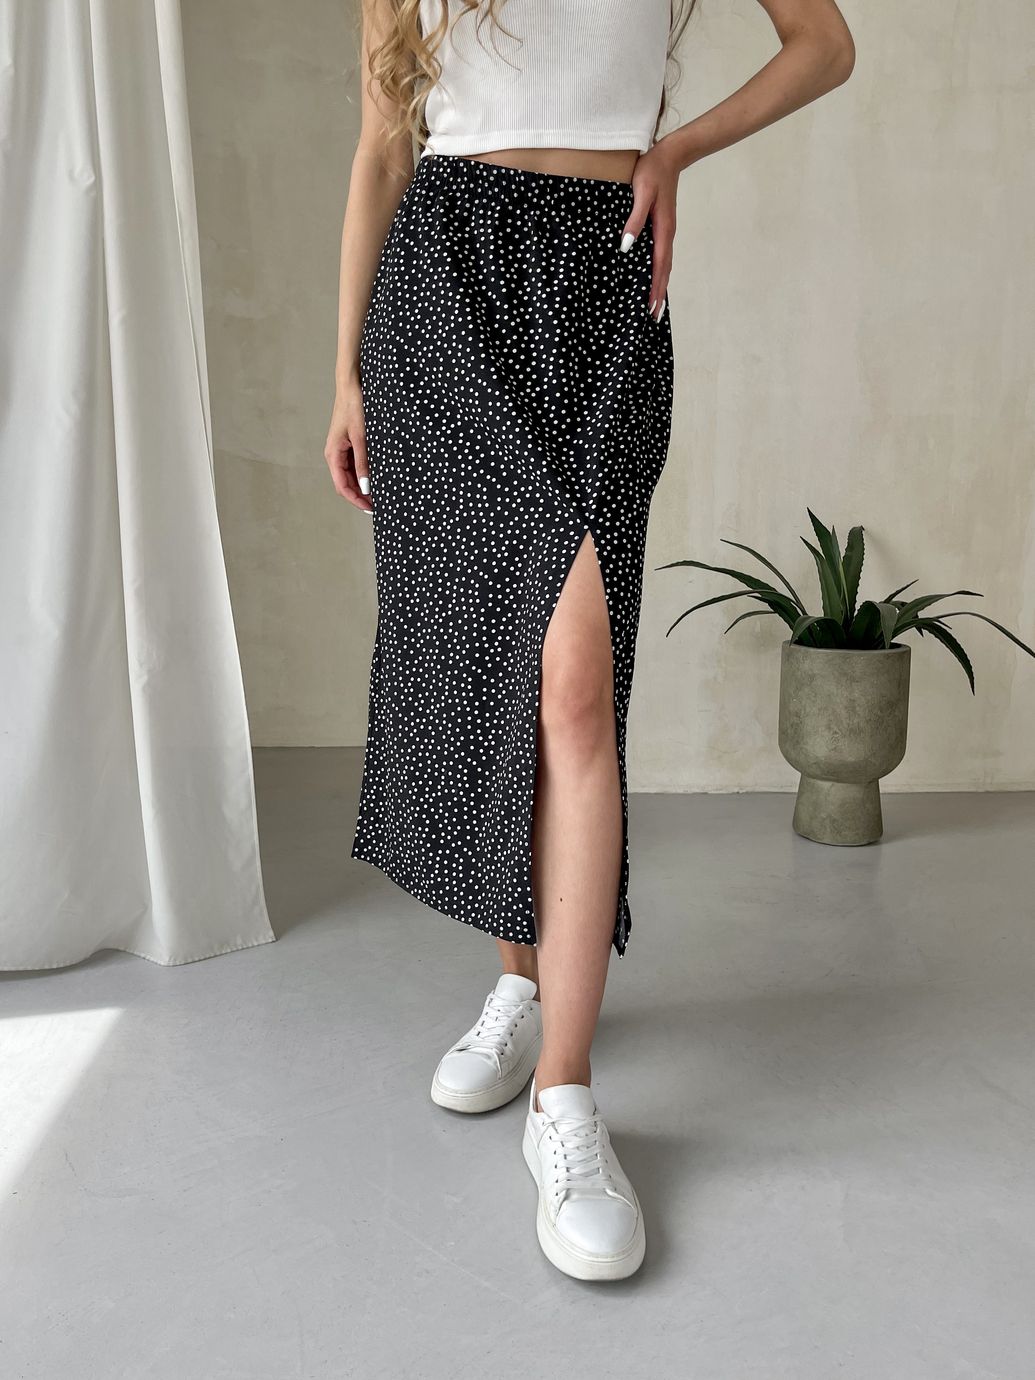 Купить Длинная женская юбка ниже колена с размером в горох Merlini Парма 400000101, размер 42-44 (S-M) в интернет-магазине